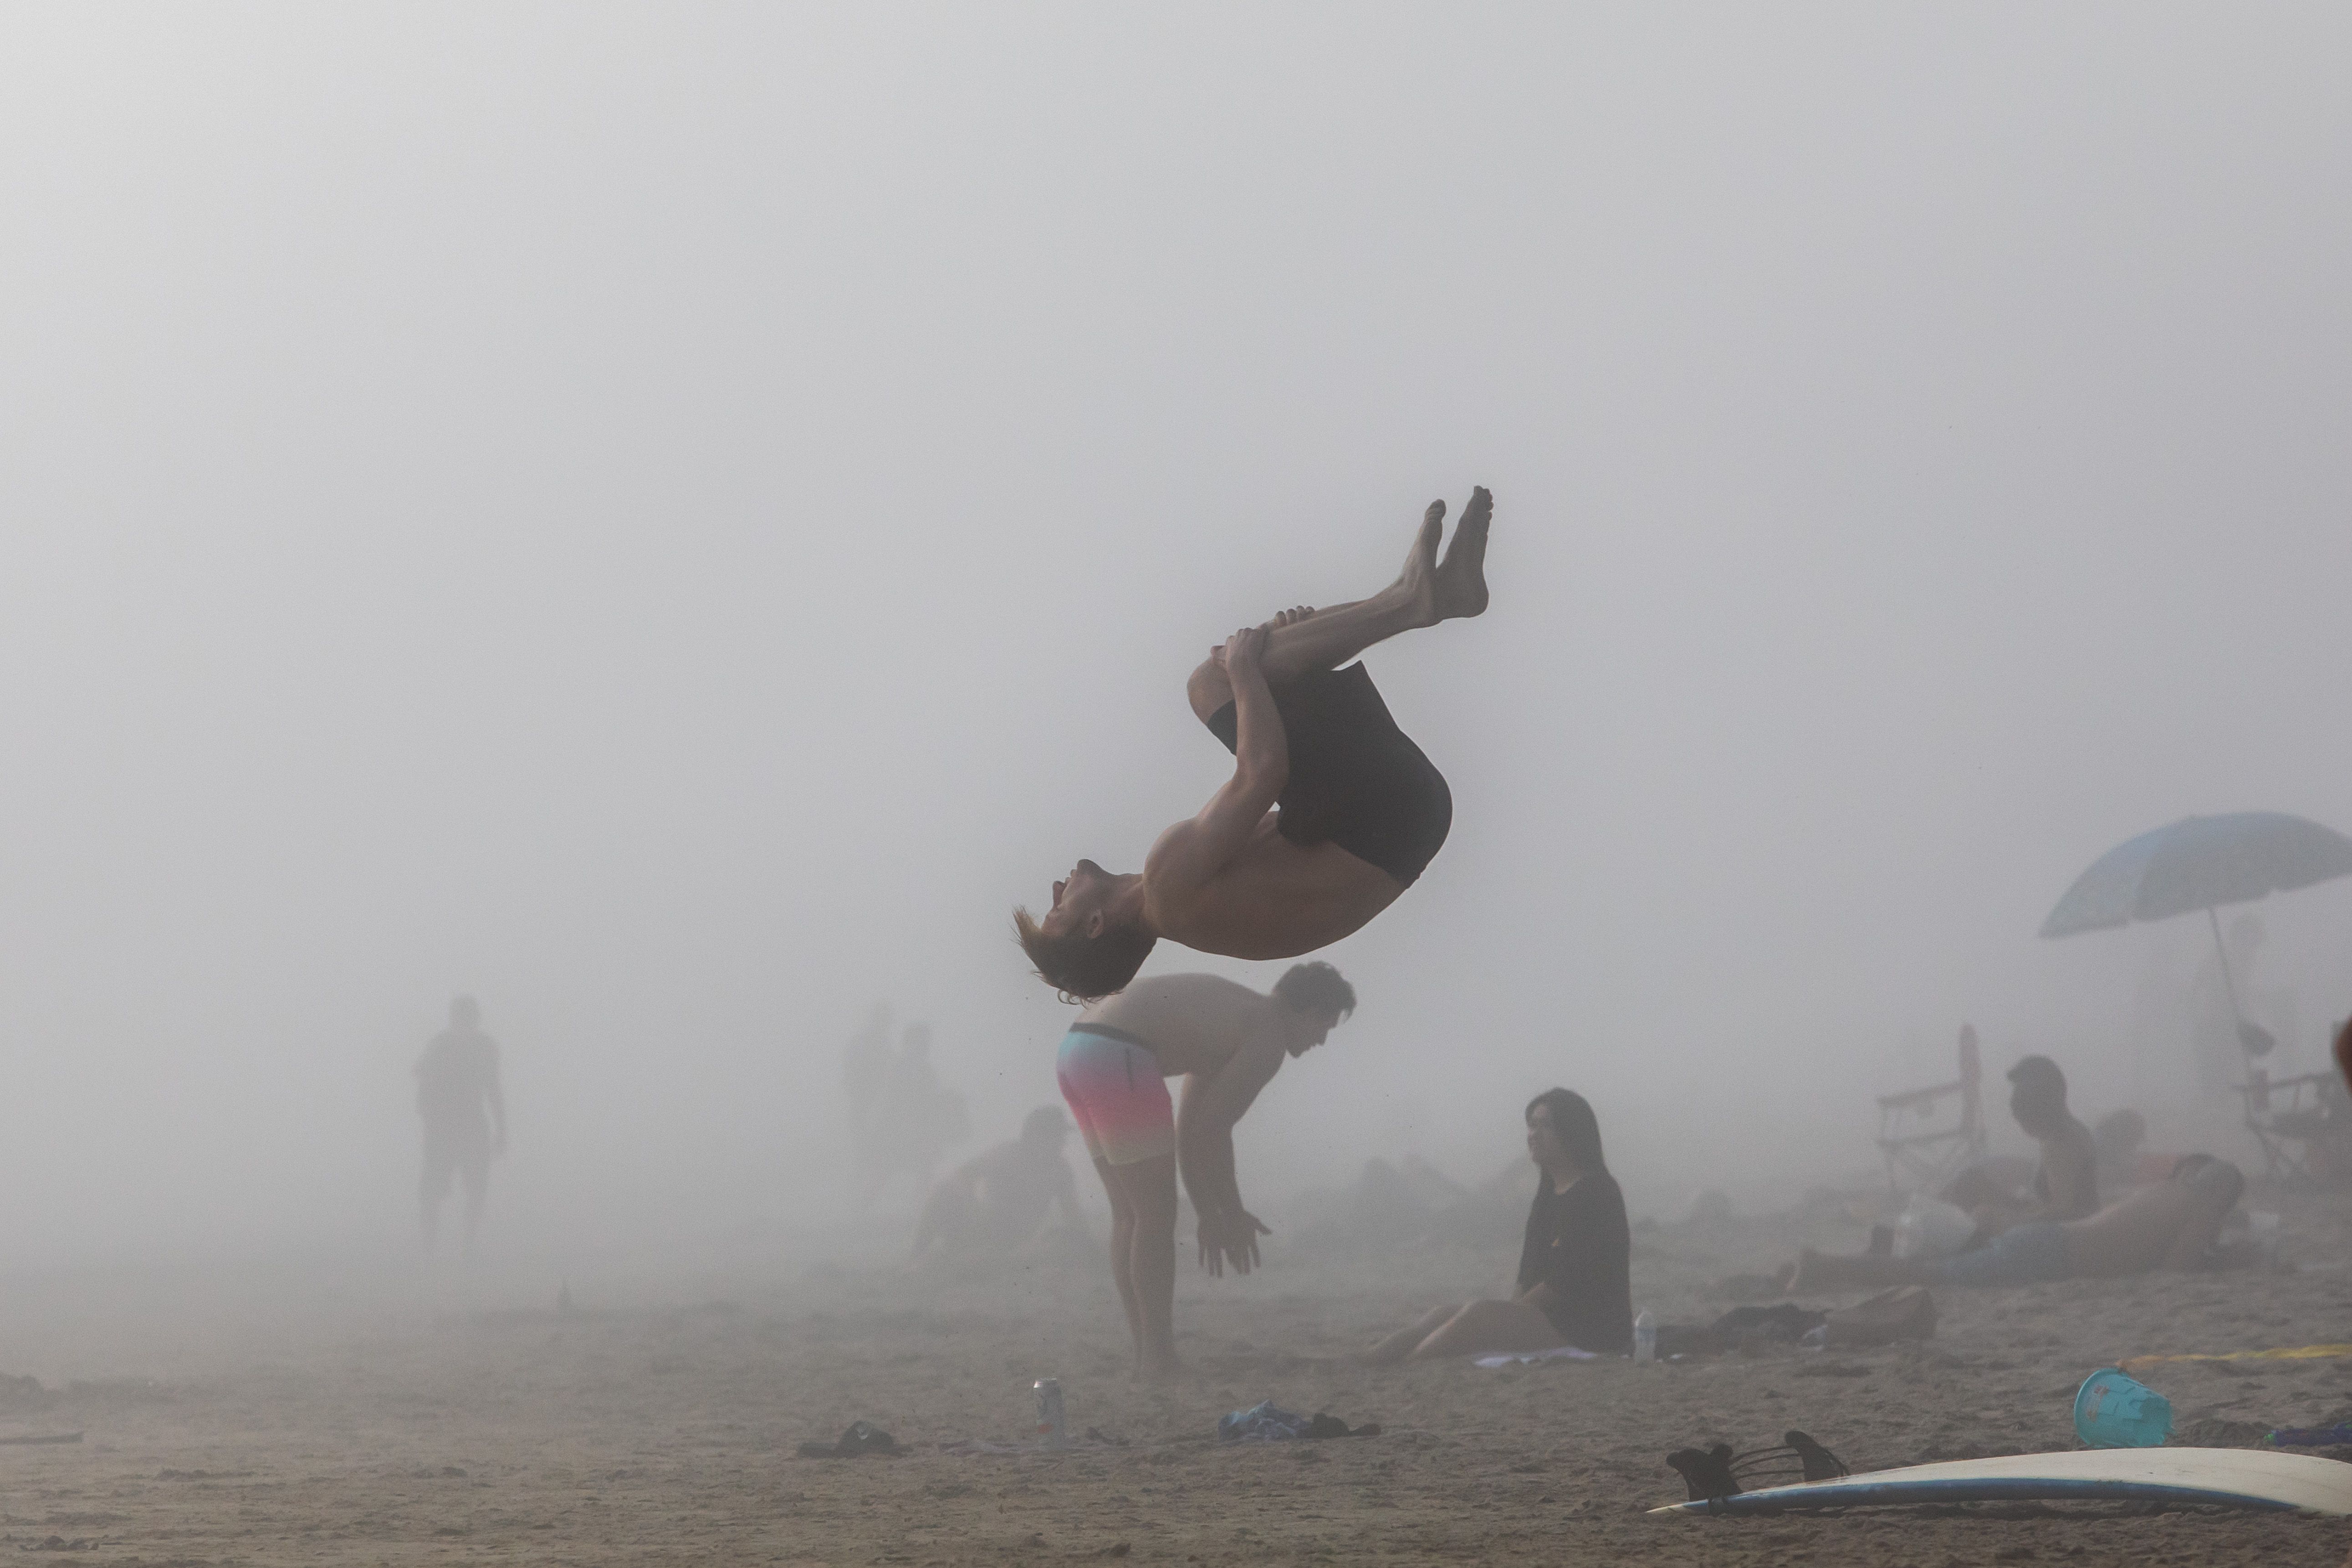 People enjoy the beach through the afternoon fog amid the novel coronavirus pandemic in Huntington Beach, California on April 25, 2020.